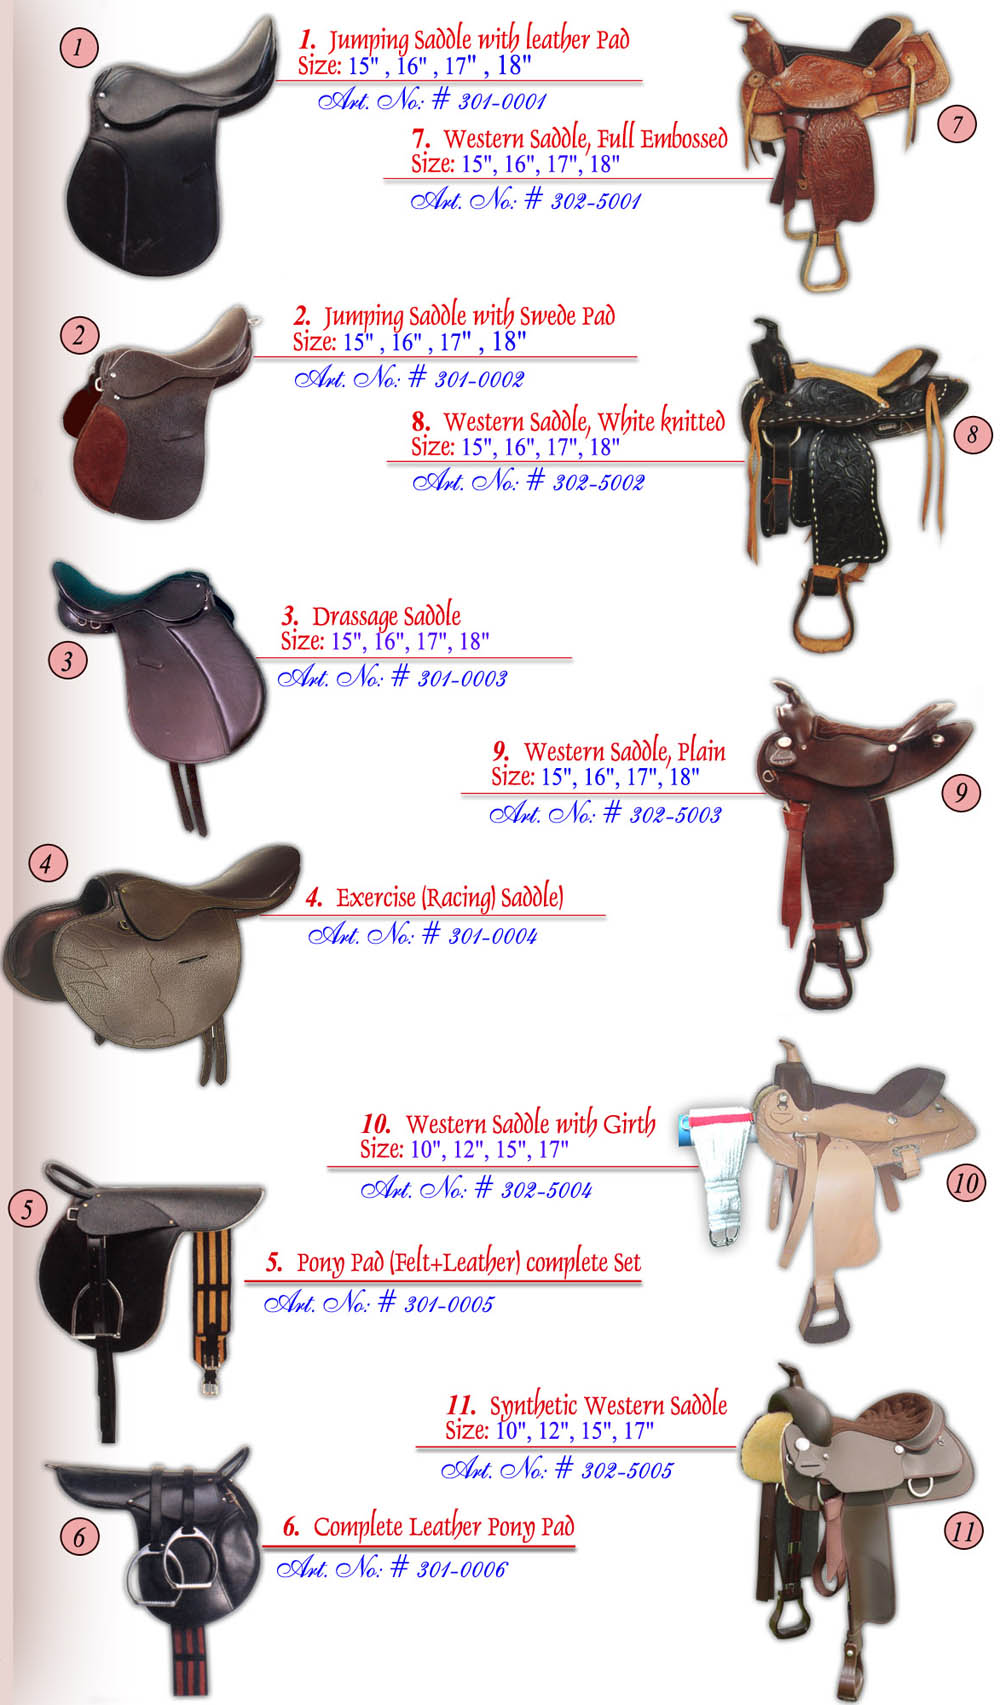 English & Western Style Saddles